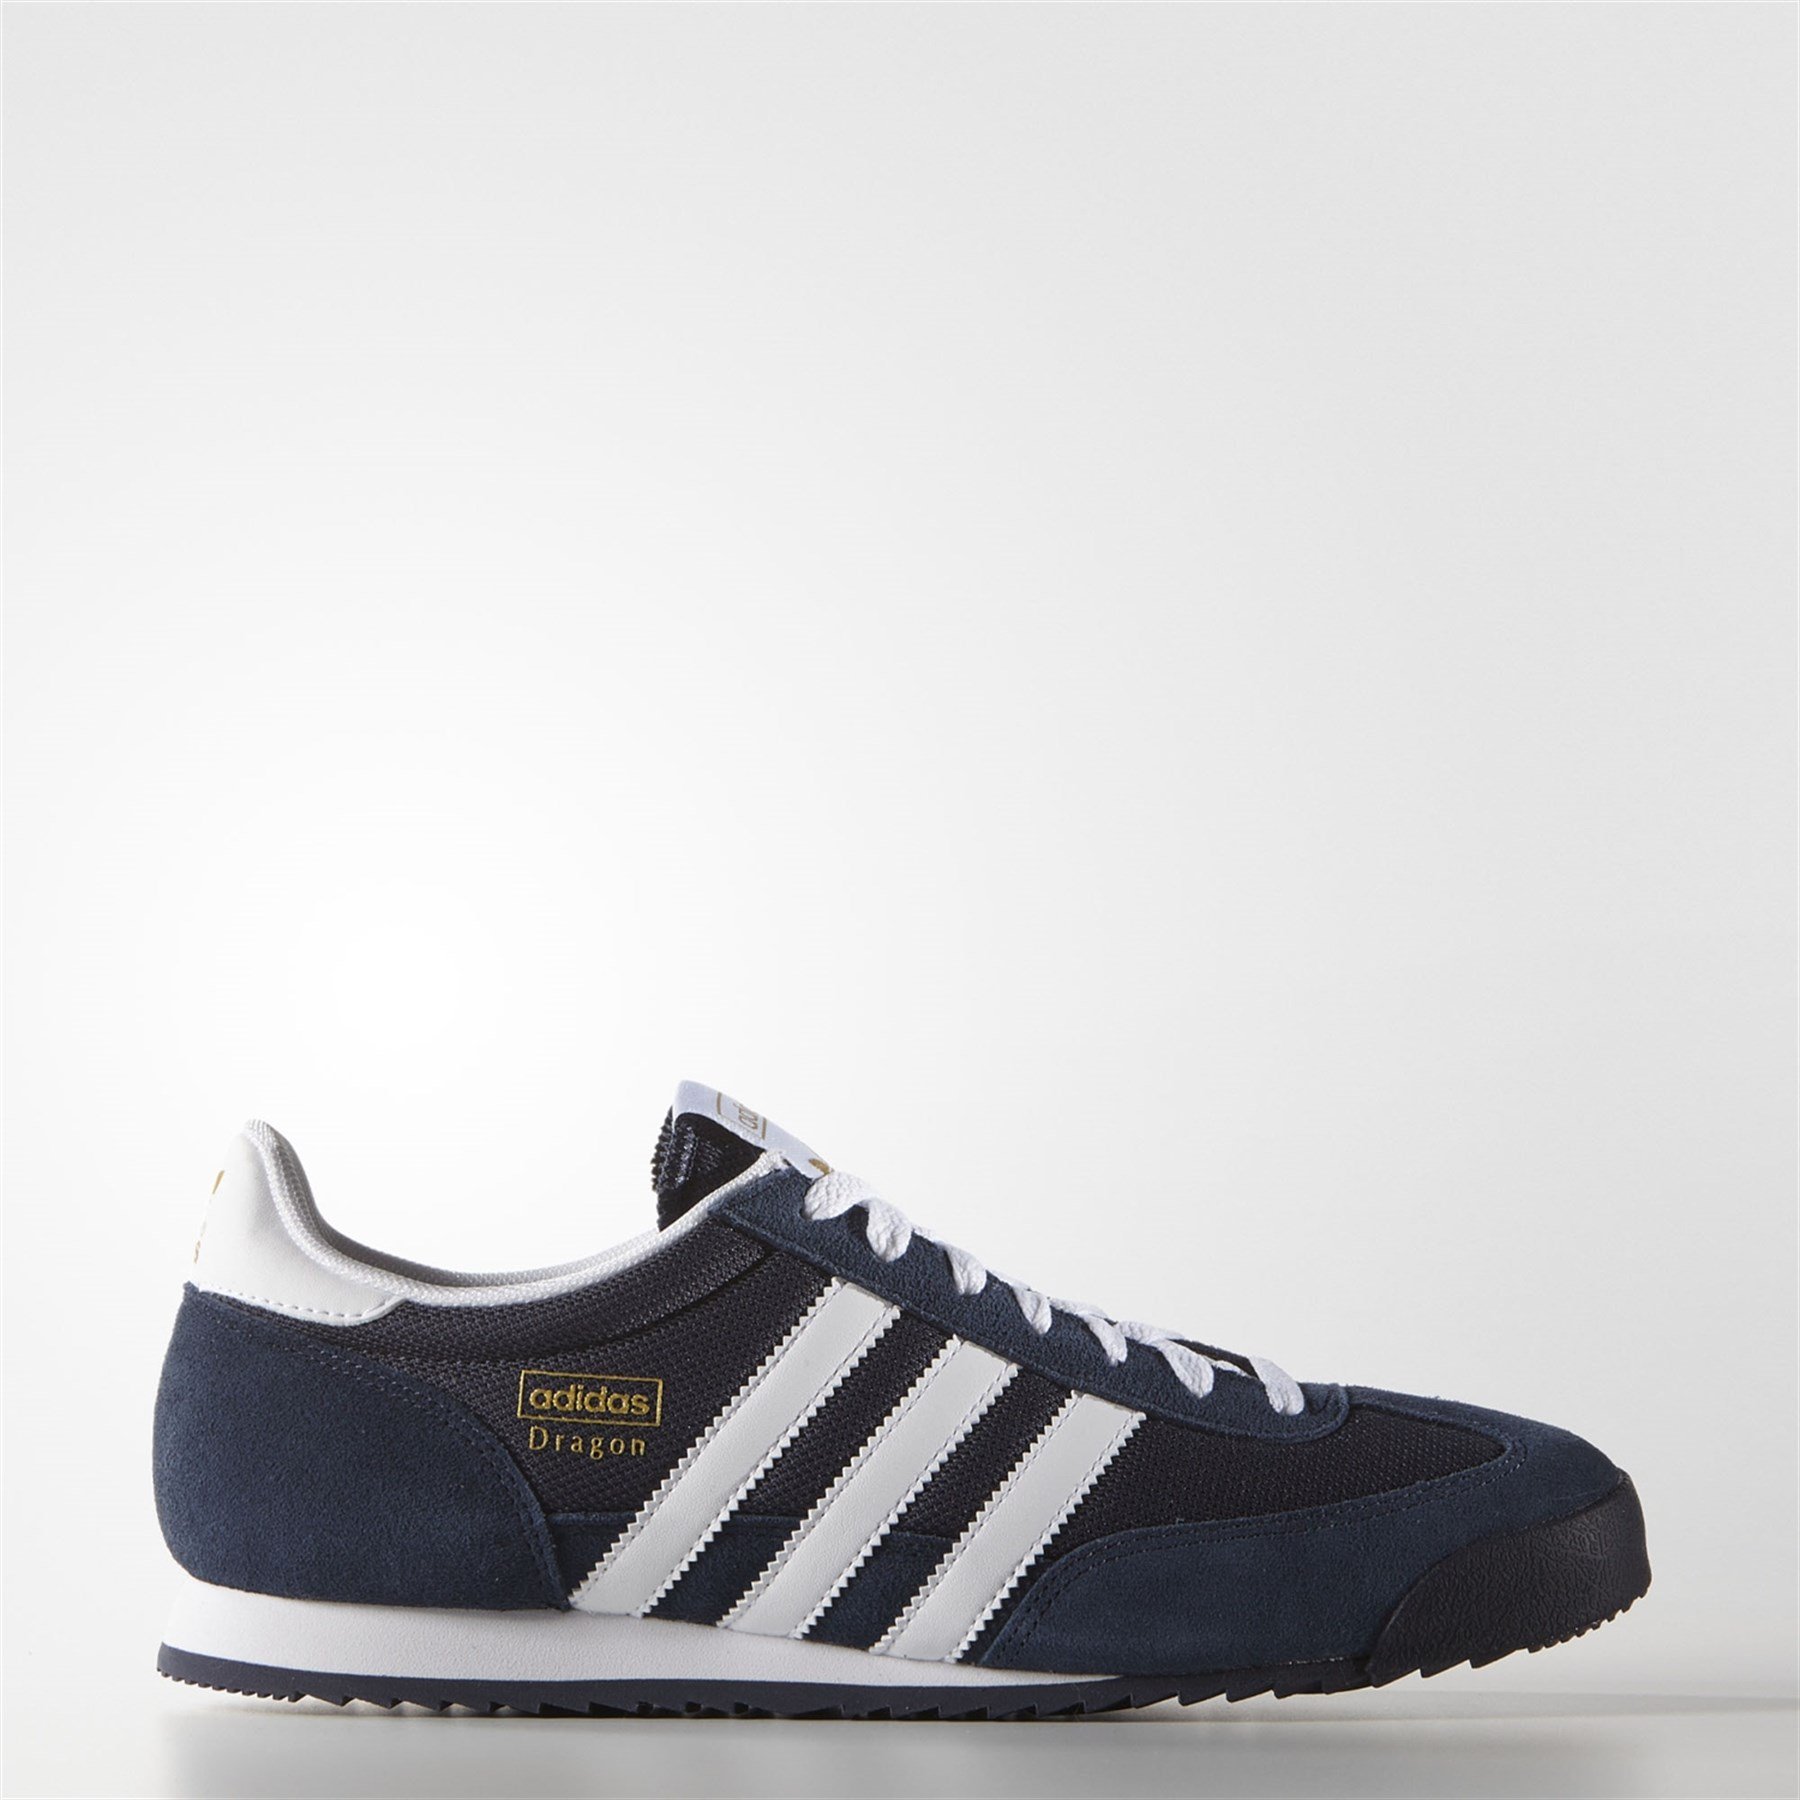 Adidas Erkek Ayakkabı G50919 DRAGON